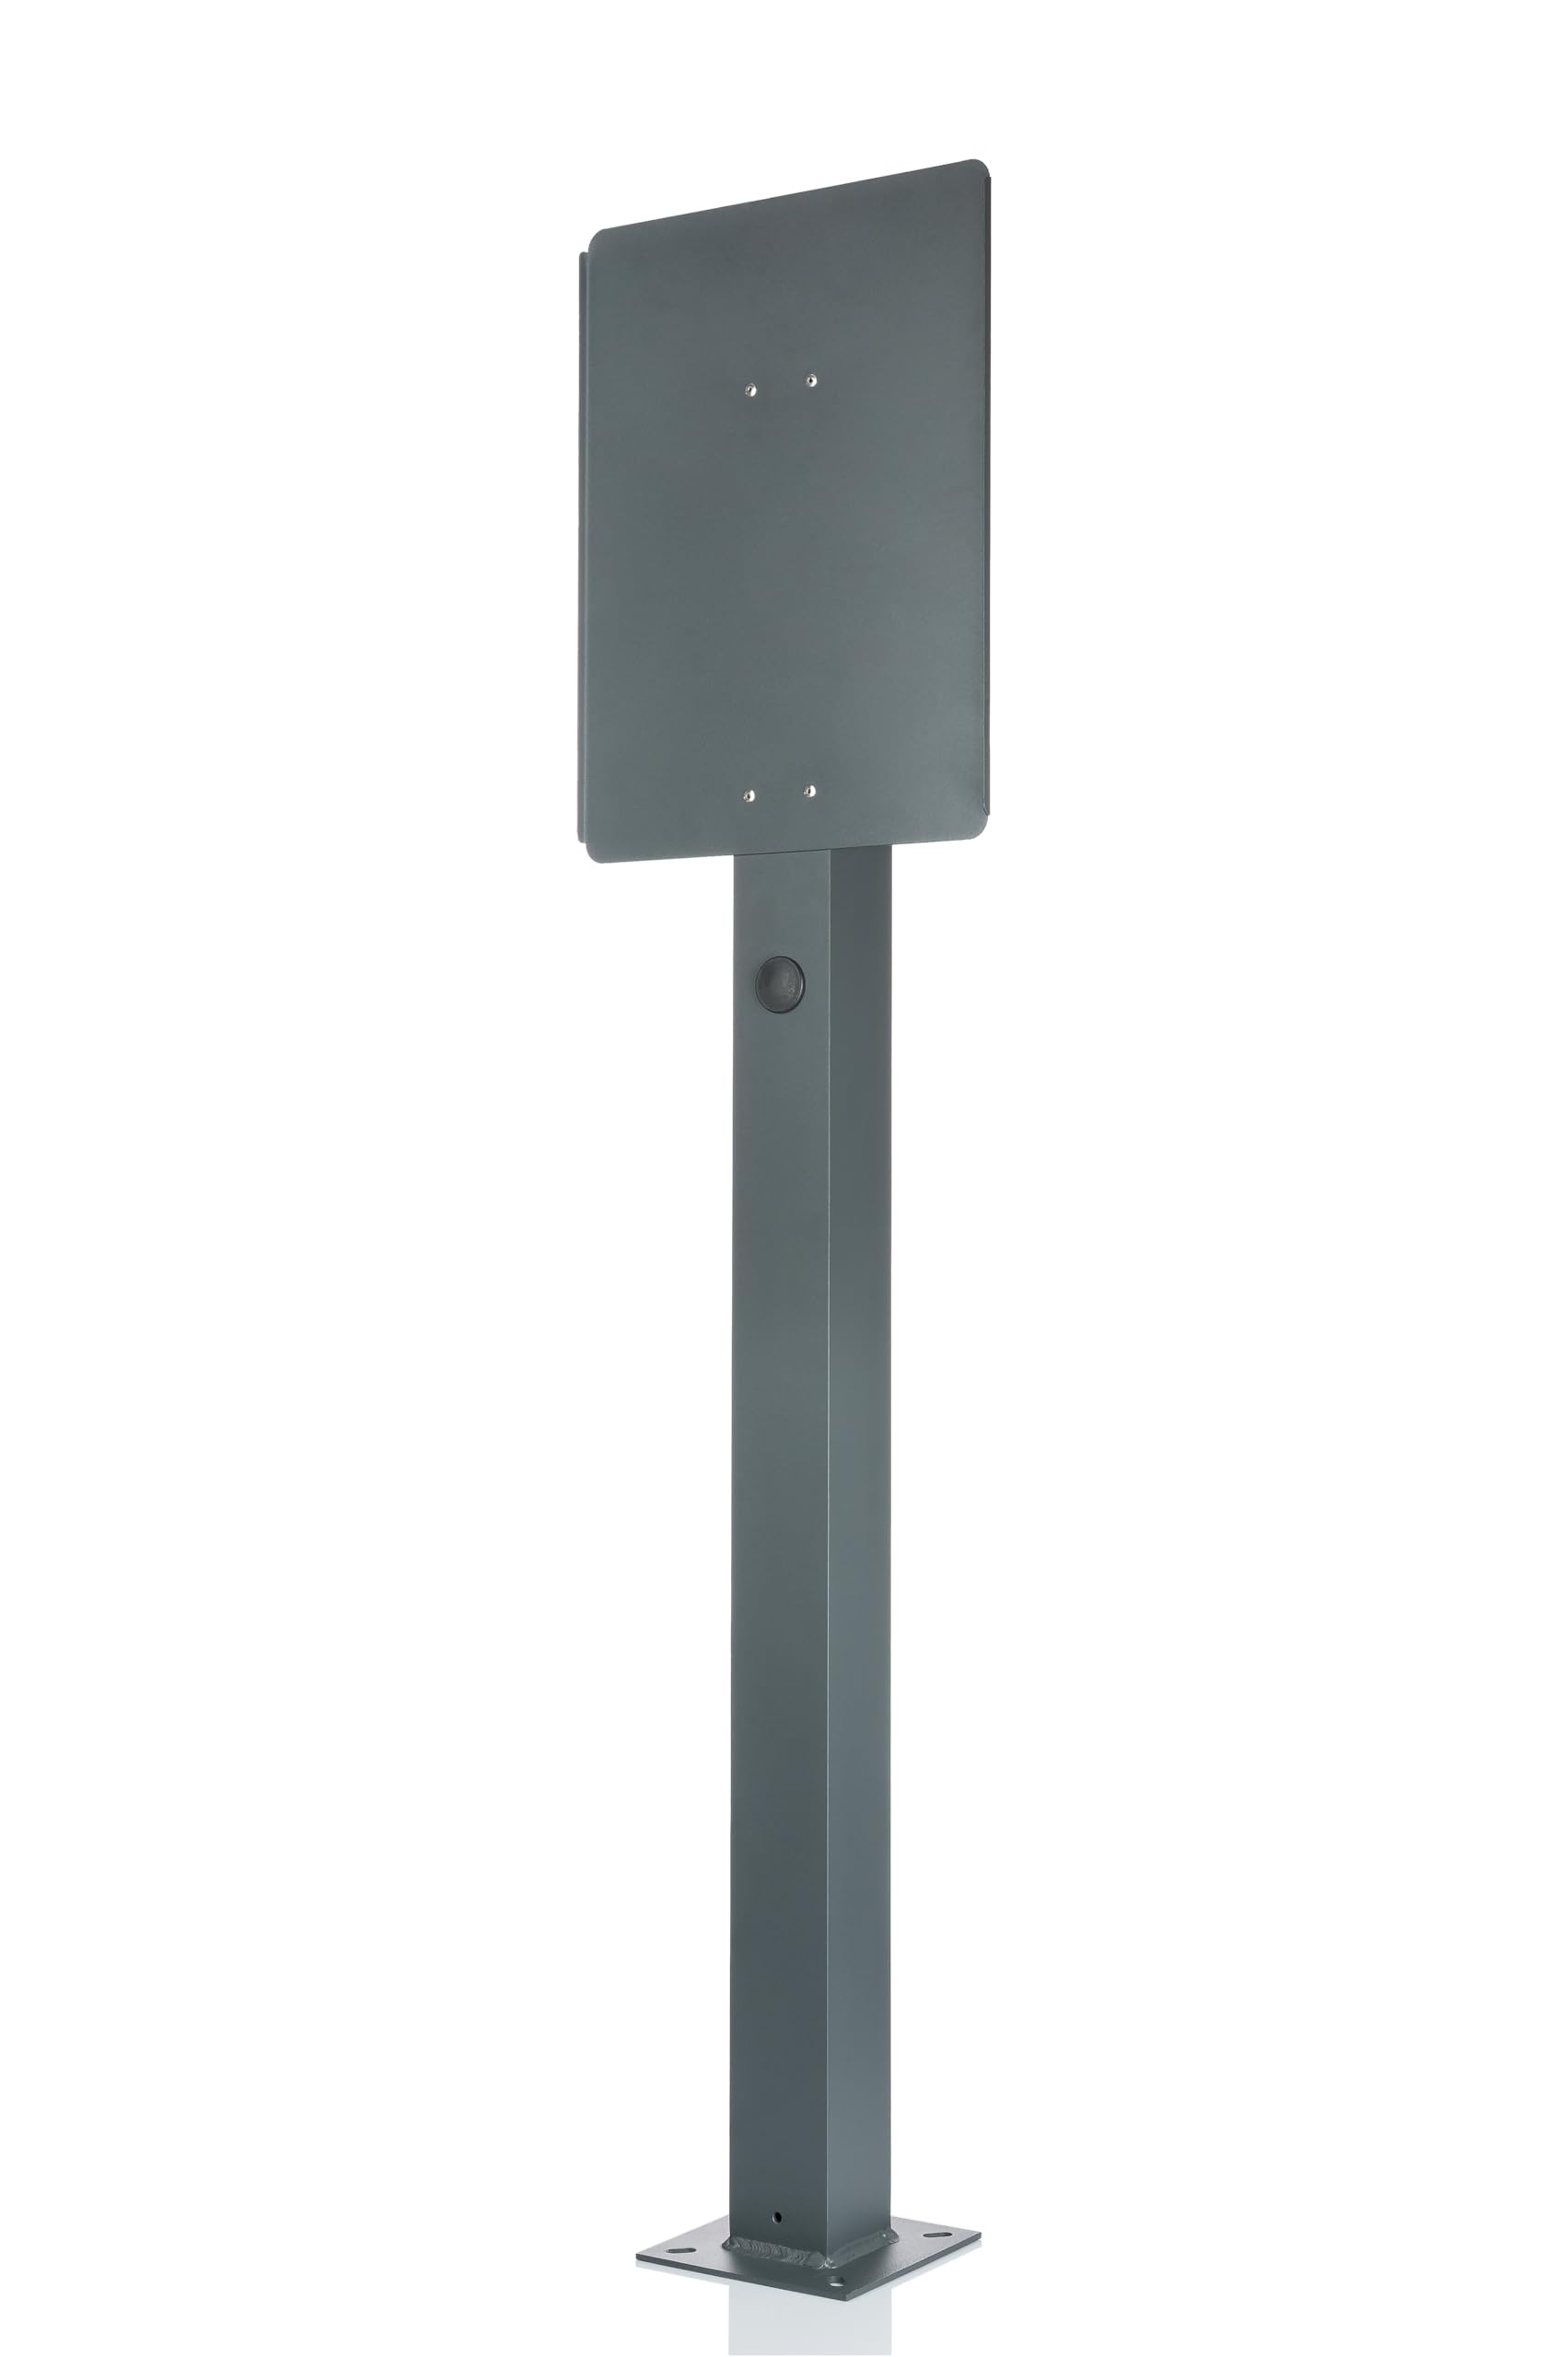 Kreainvent Universeller Hochwertiger Wallbox-Standfuß aus Aluminium. Standsäule für Ladestationen für elektrofahrzeuge von Kreainvent